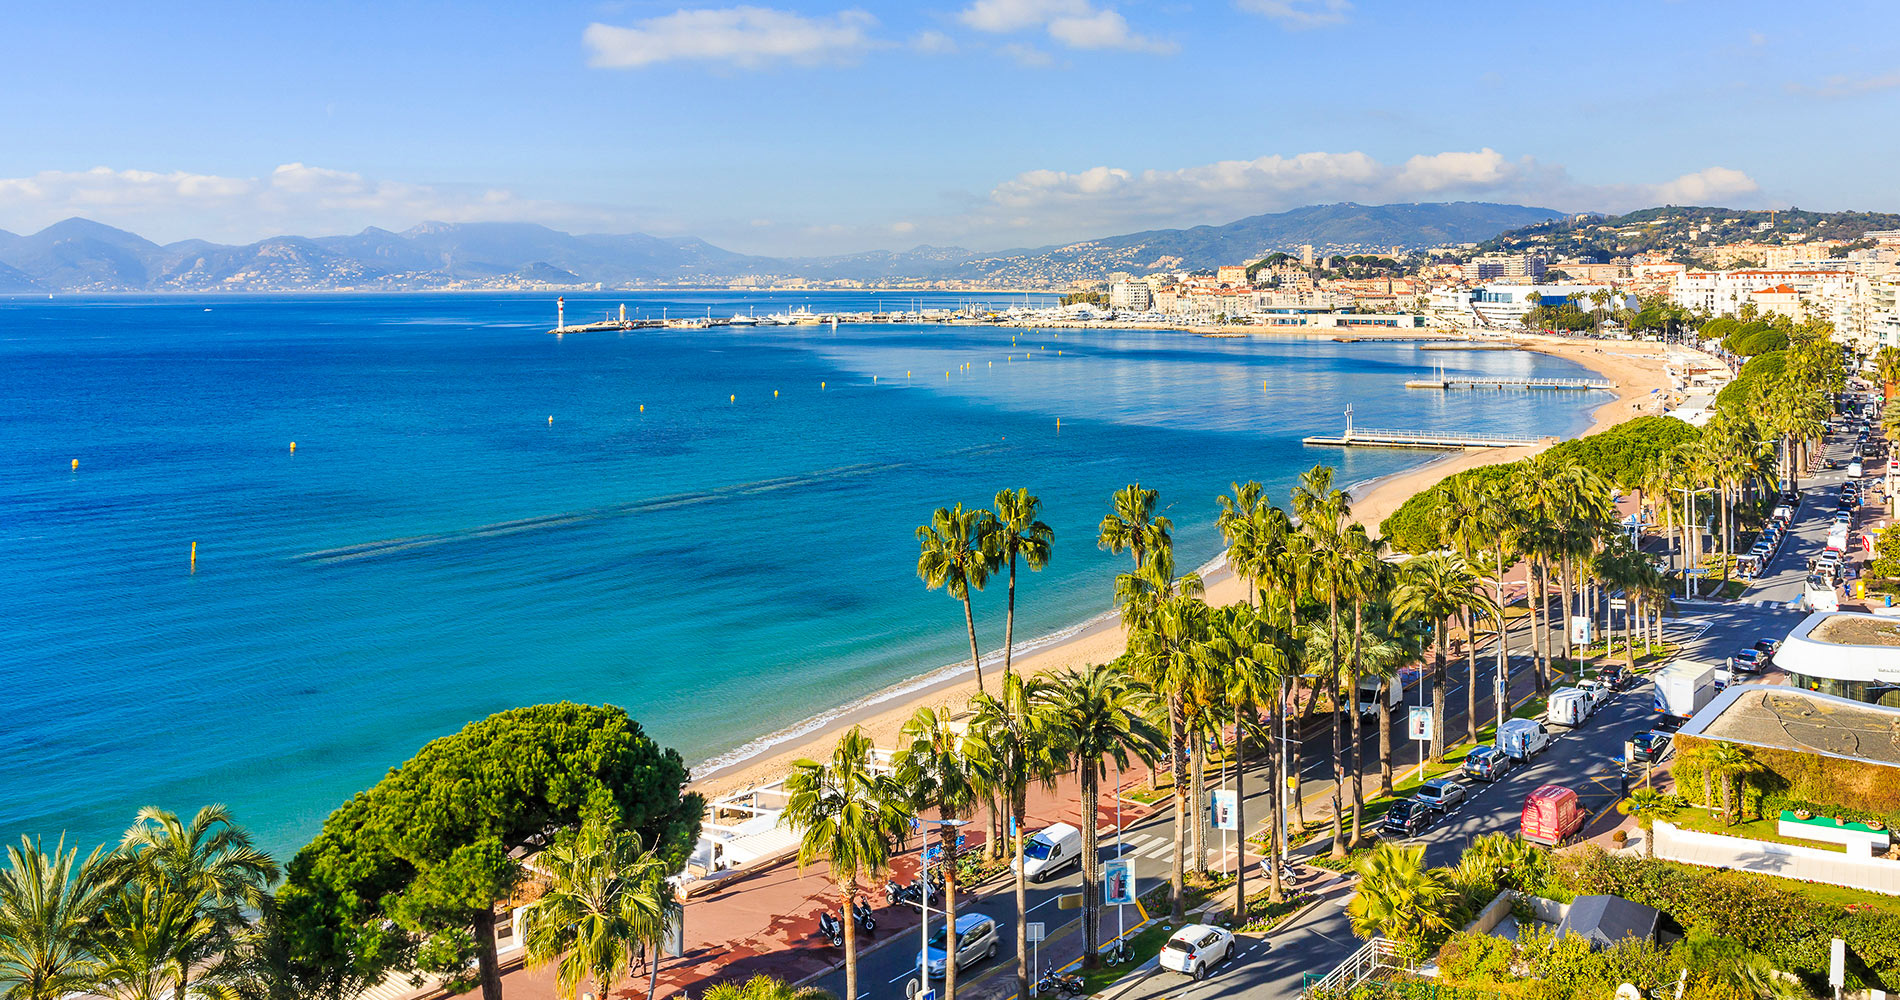  Visiter Cannes: top 20 des choses à faire et à voir